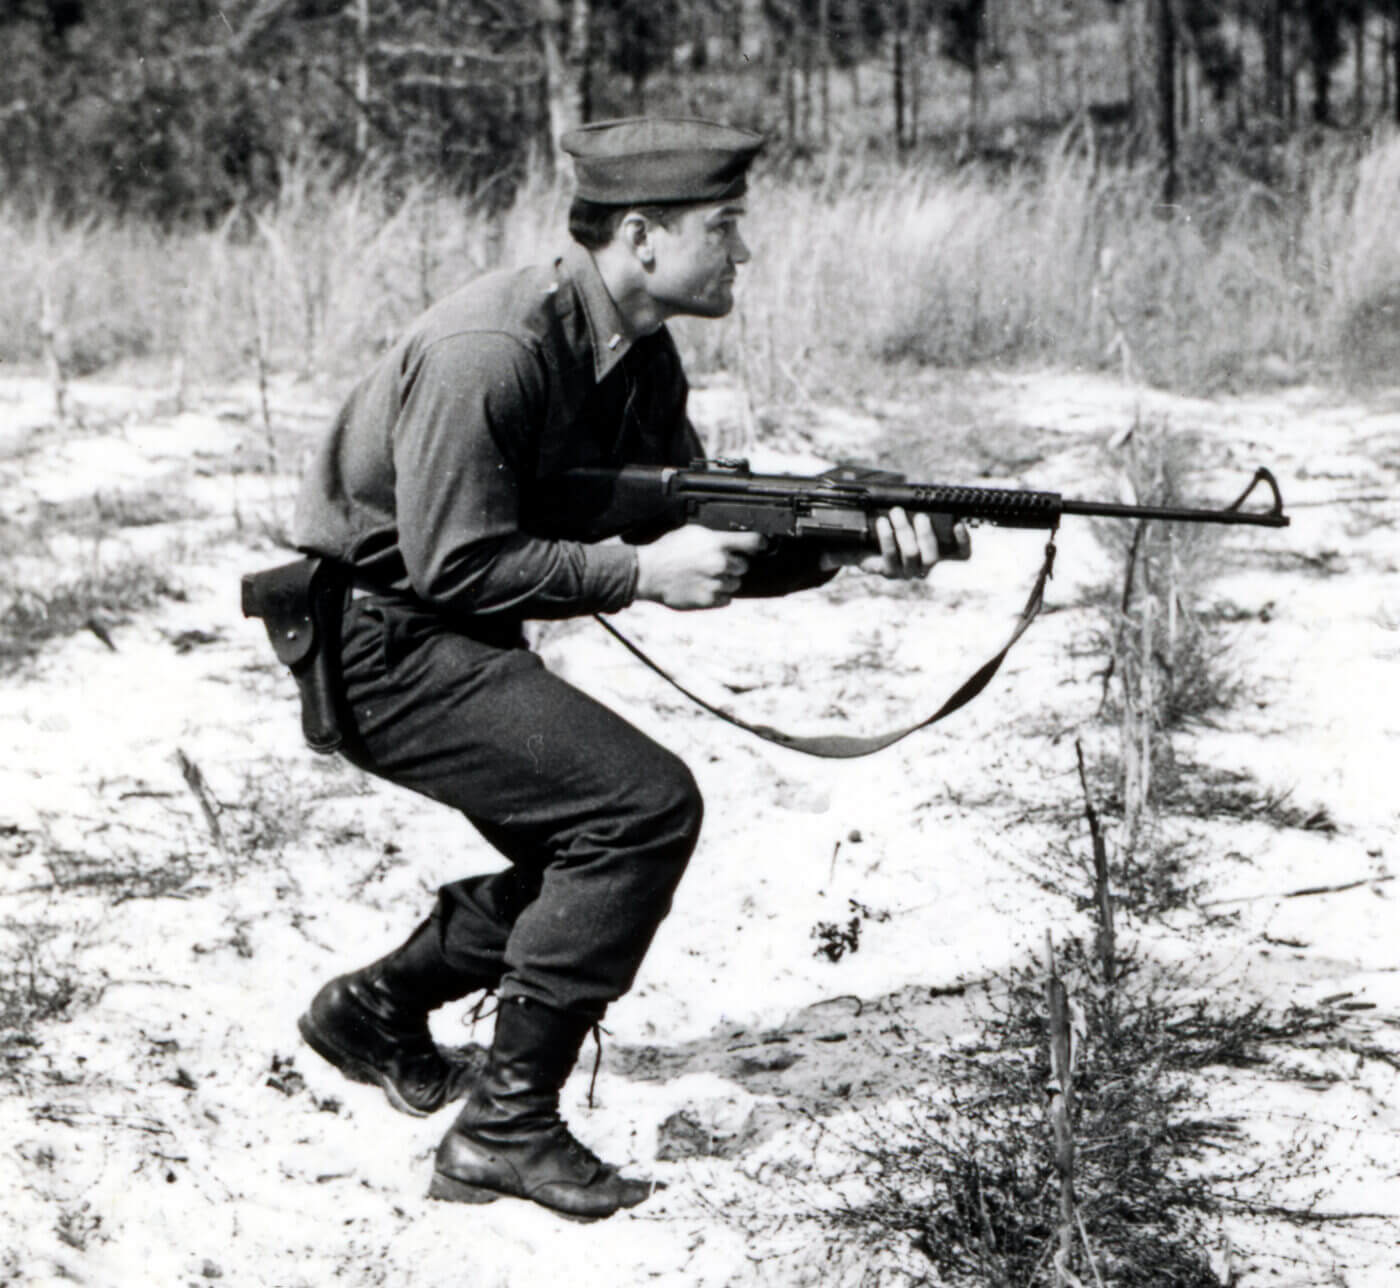 魔鬼军团伴侣:约翰逊m1941轻机枪,可单手操作,比步枪还轻